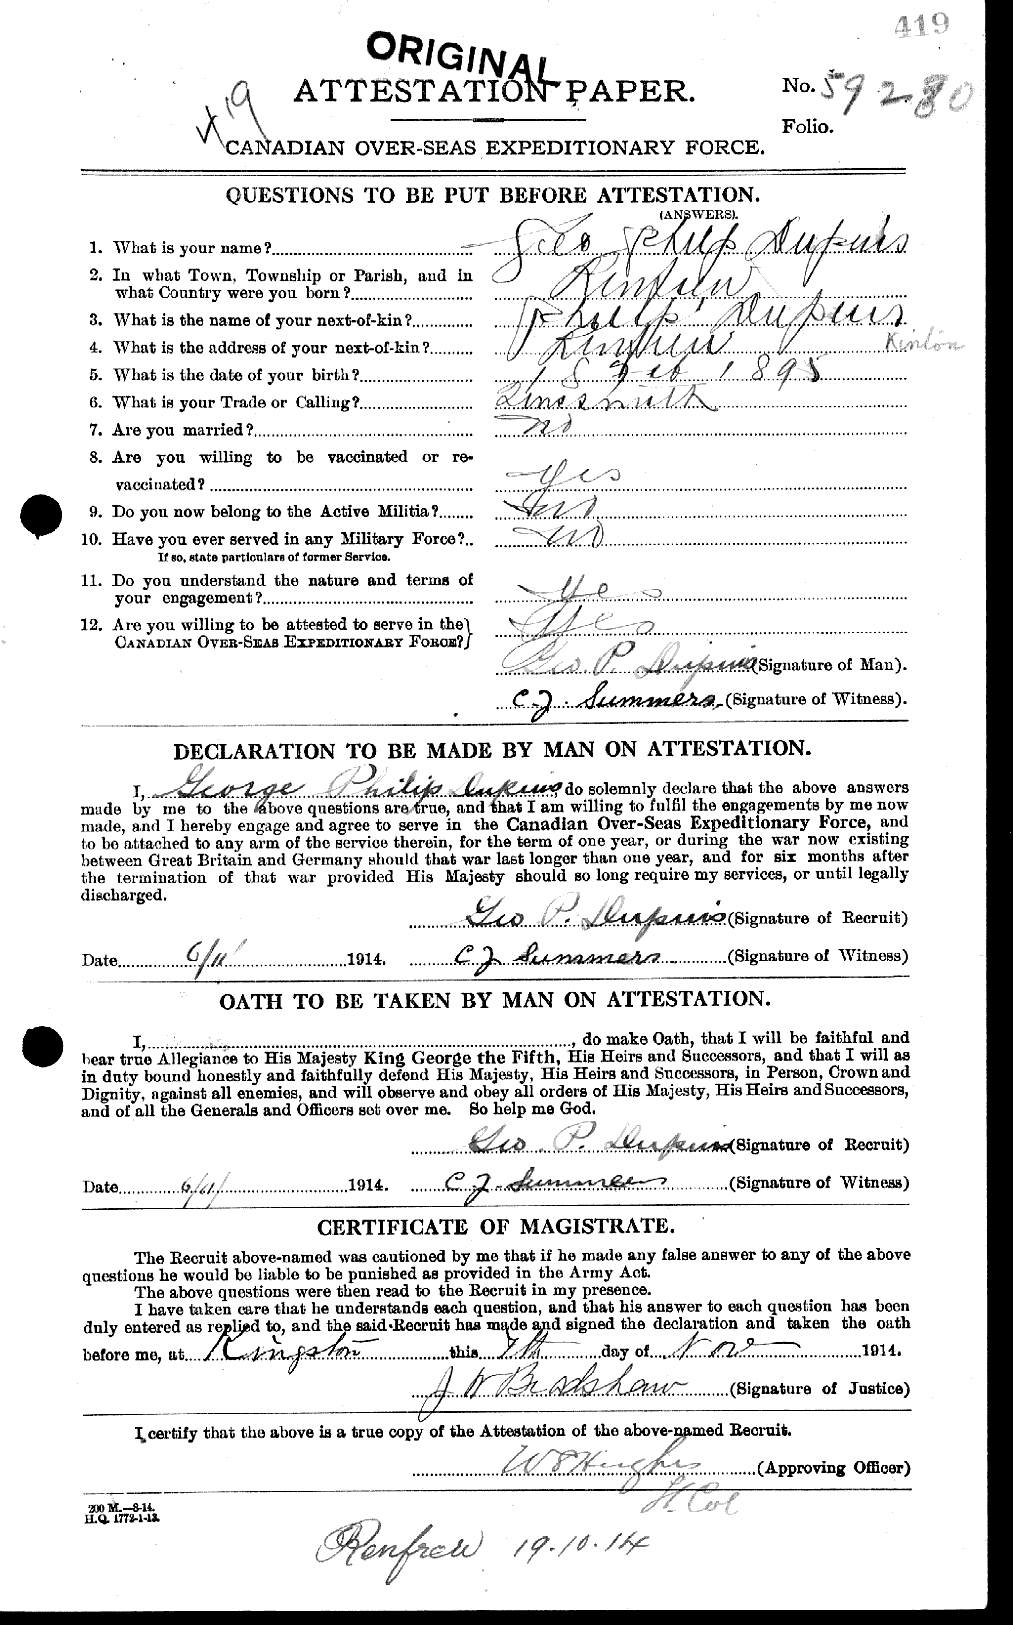 Dossiers du Personnel de la Première Guerre mondiale - CEC 051287a